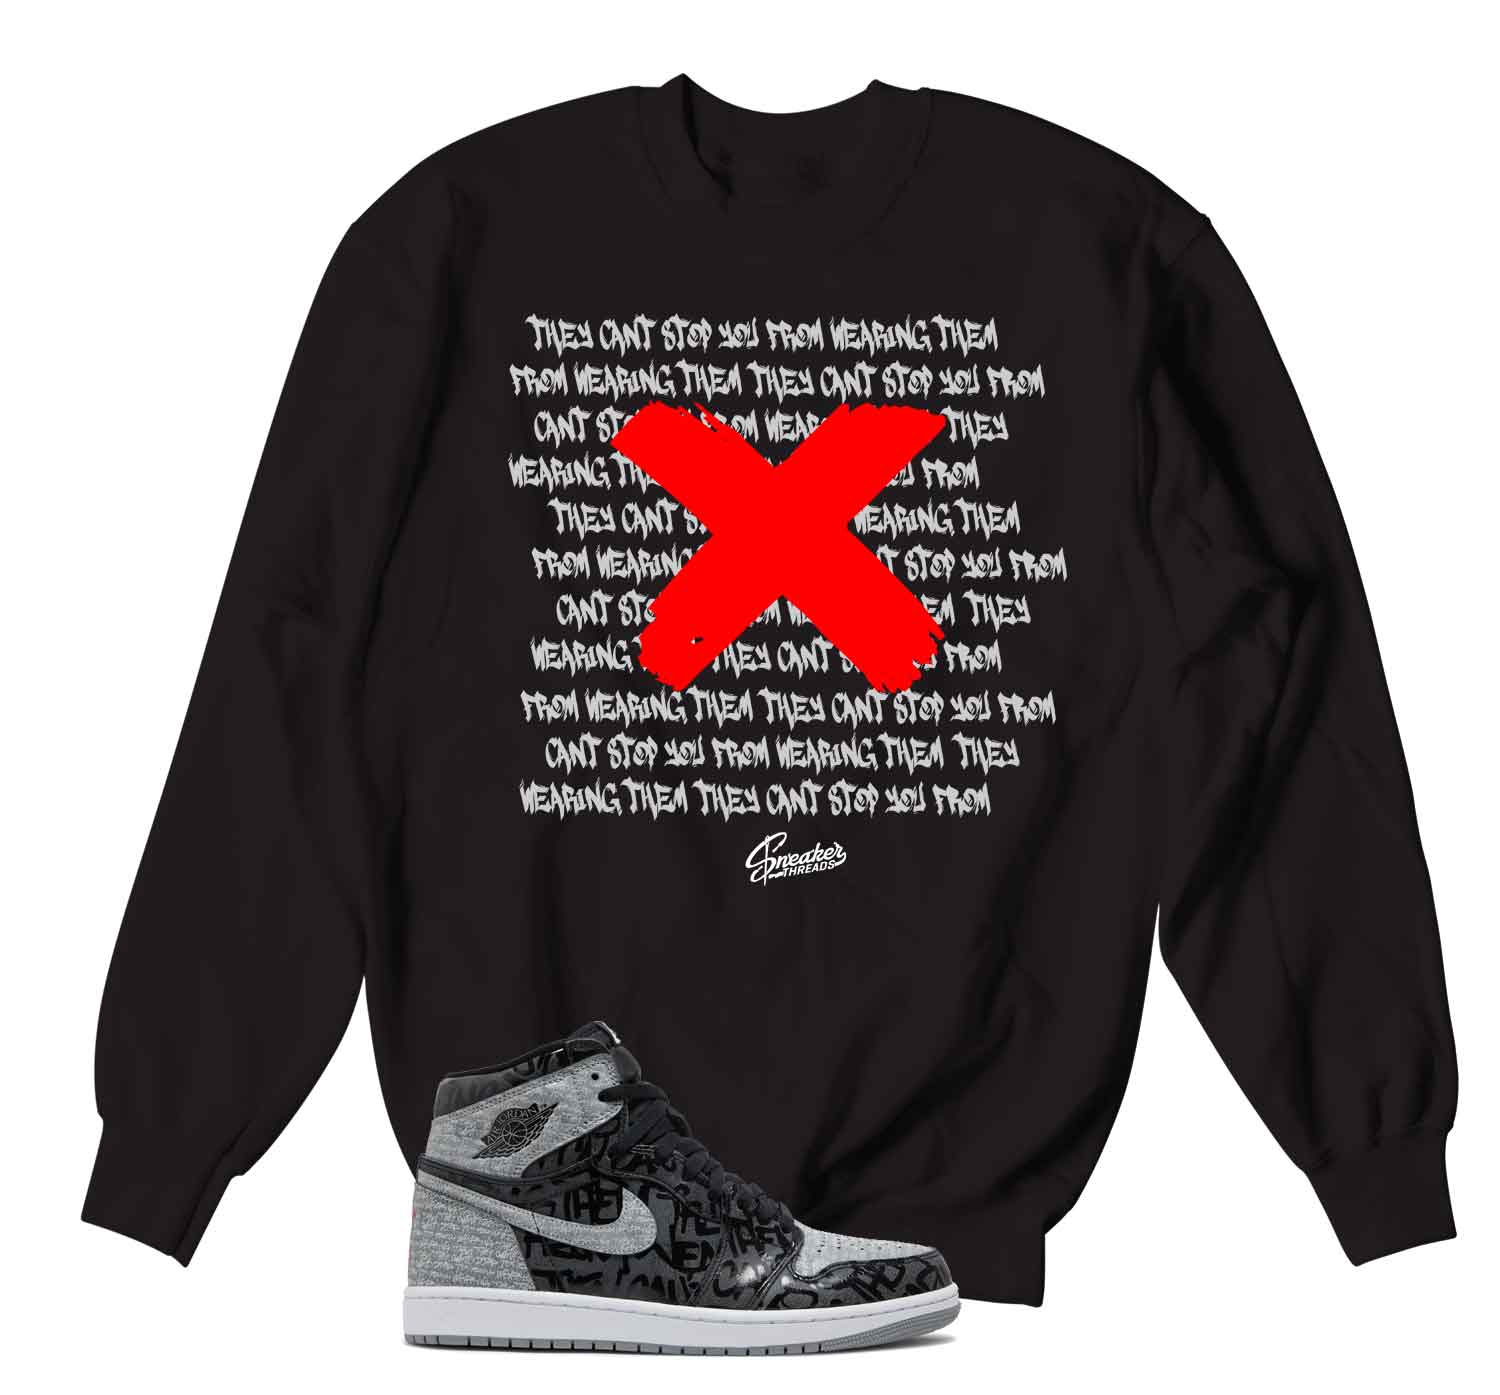 Retro 1 Rebellionaire Sweater - Banned - Black